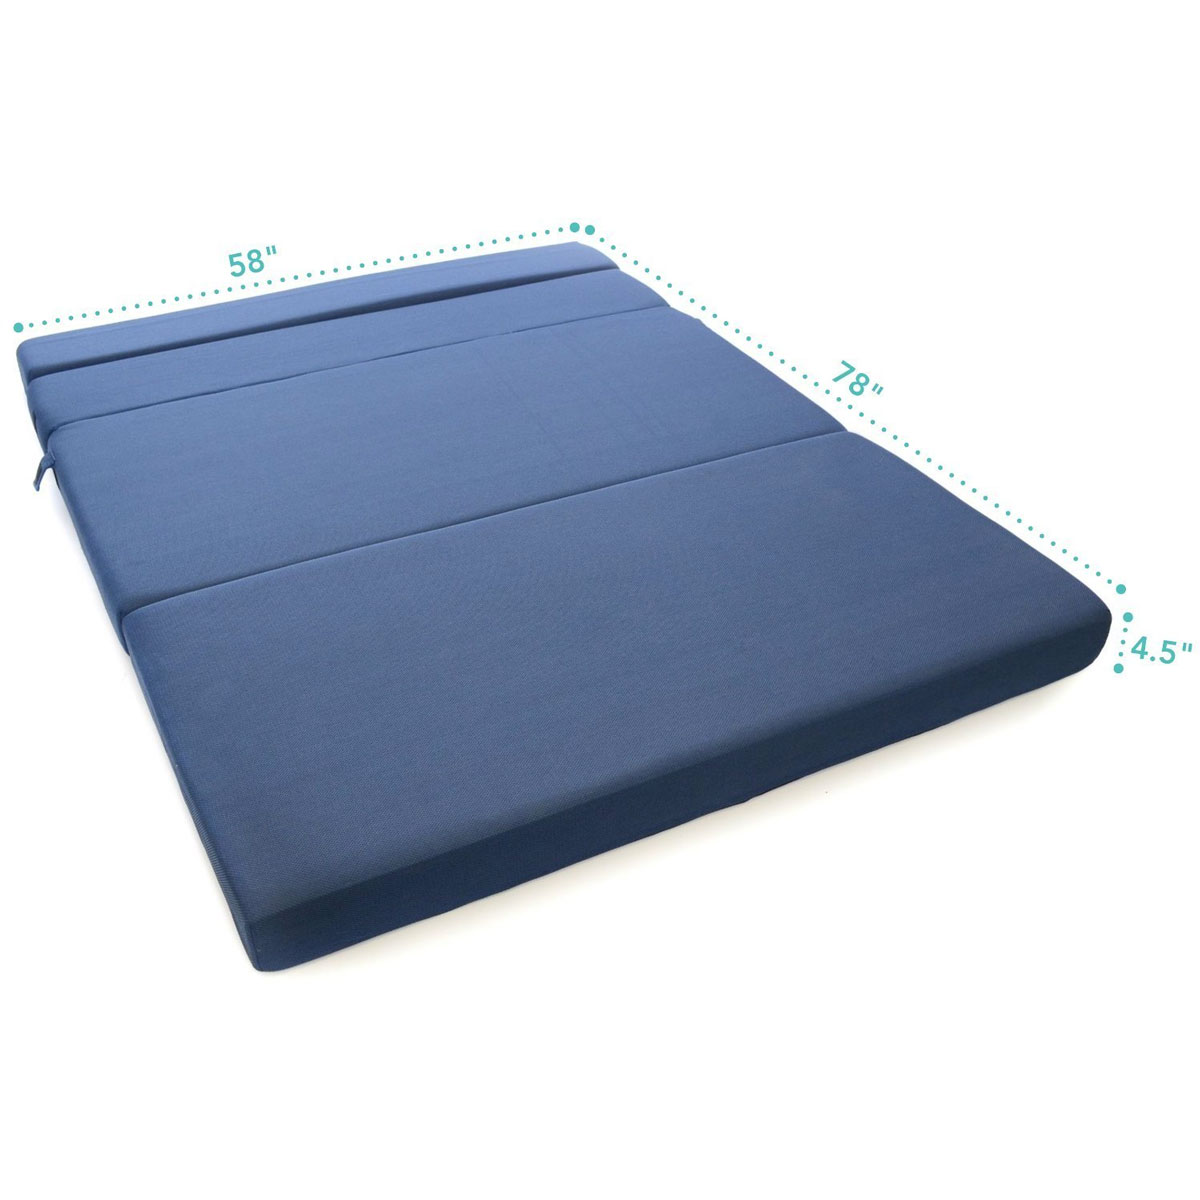 ... tri-fold foam folding mattress u0026 sofa bed ... KNAXFFT